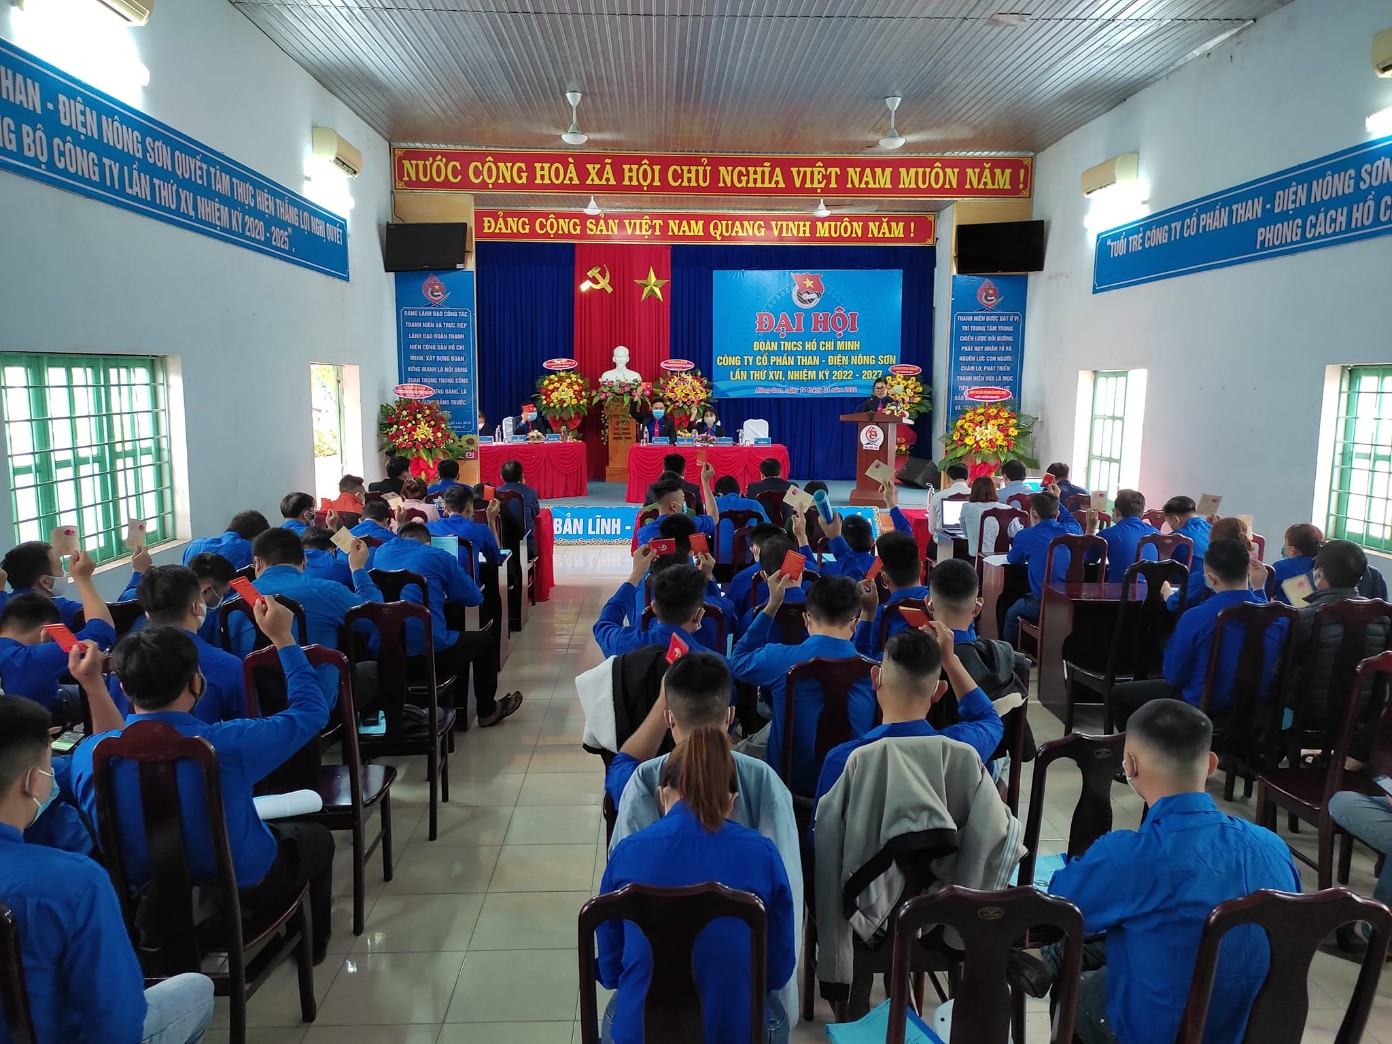 Huyện đoàn Nông Sơn hoàn thành tổ chức Đại hội Đoàn cấp cơ sở